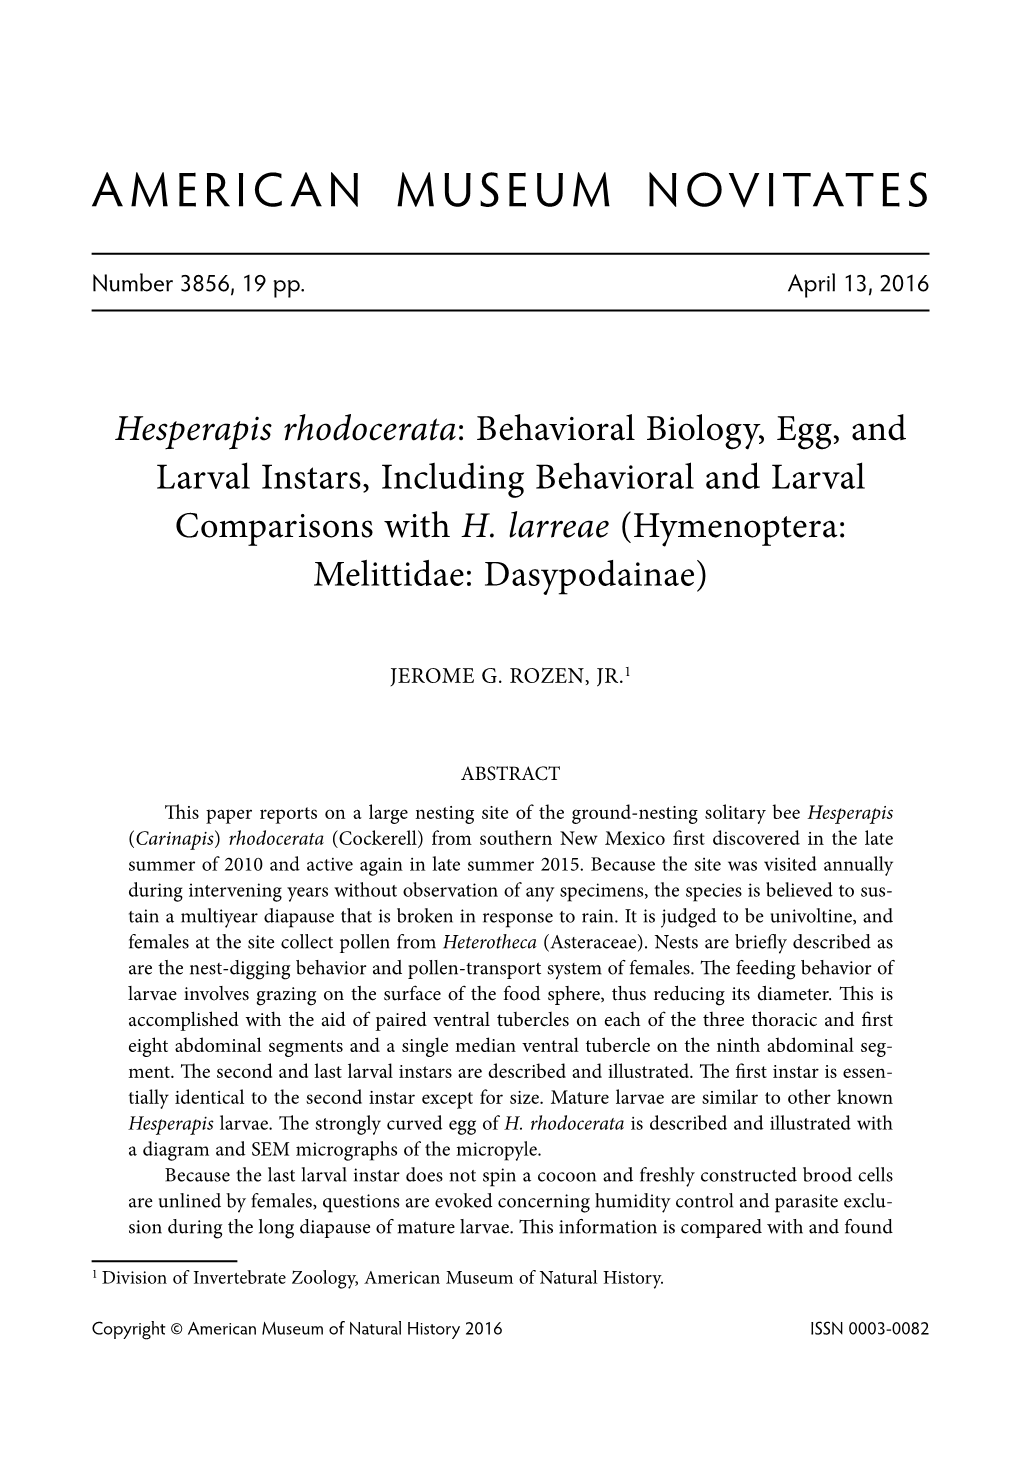 Hesperapis Rhodocerata: Behavioral Biology, Egg, and Larval Instars, Including Behavioral and Larval Comparisons with H